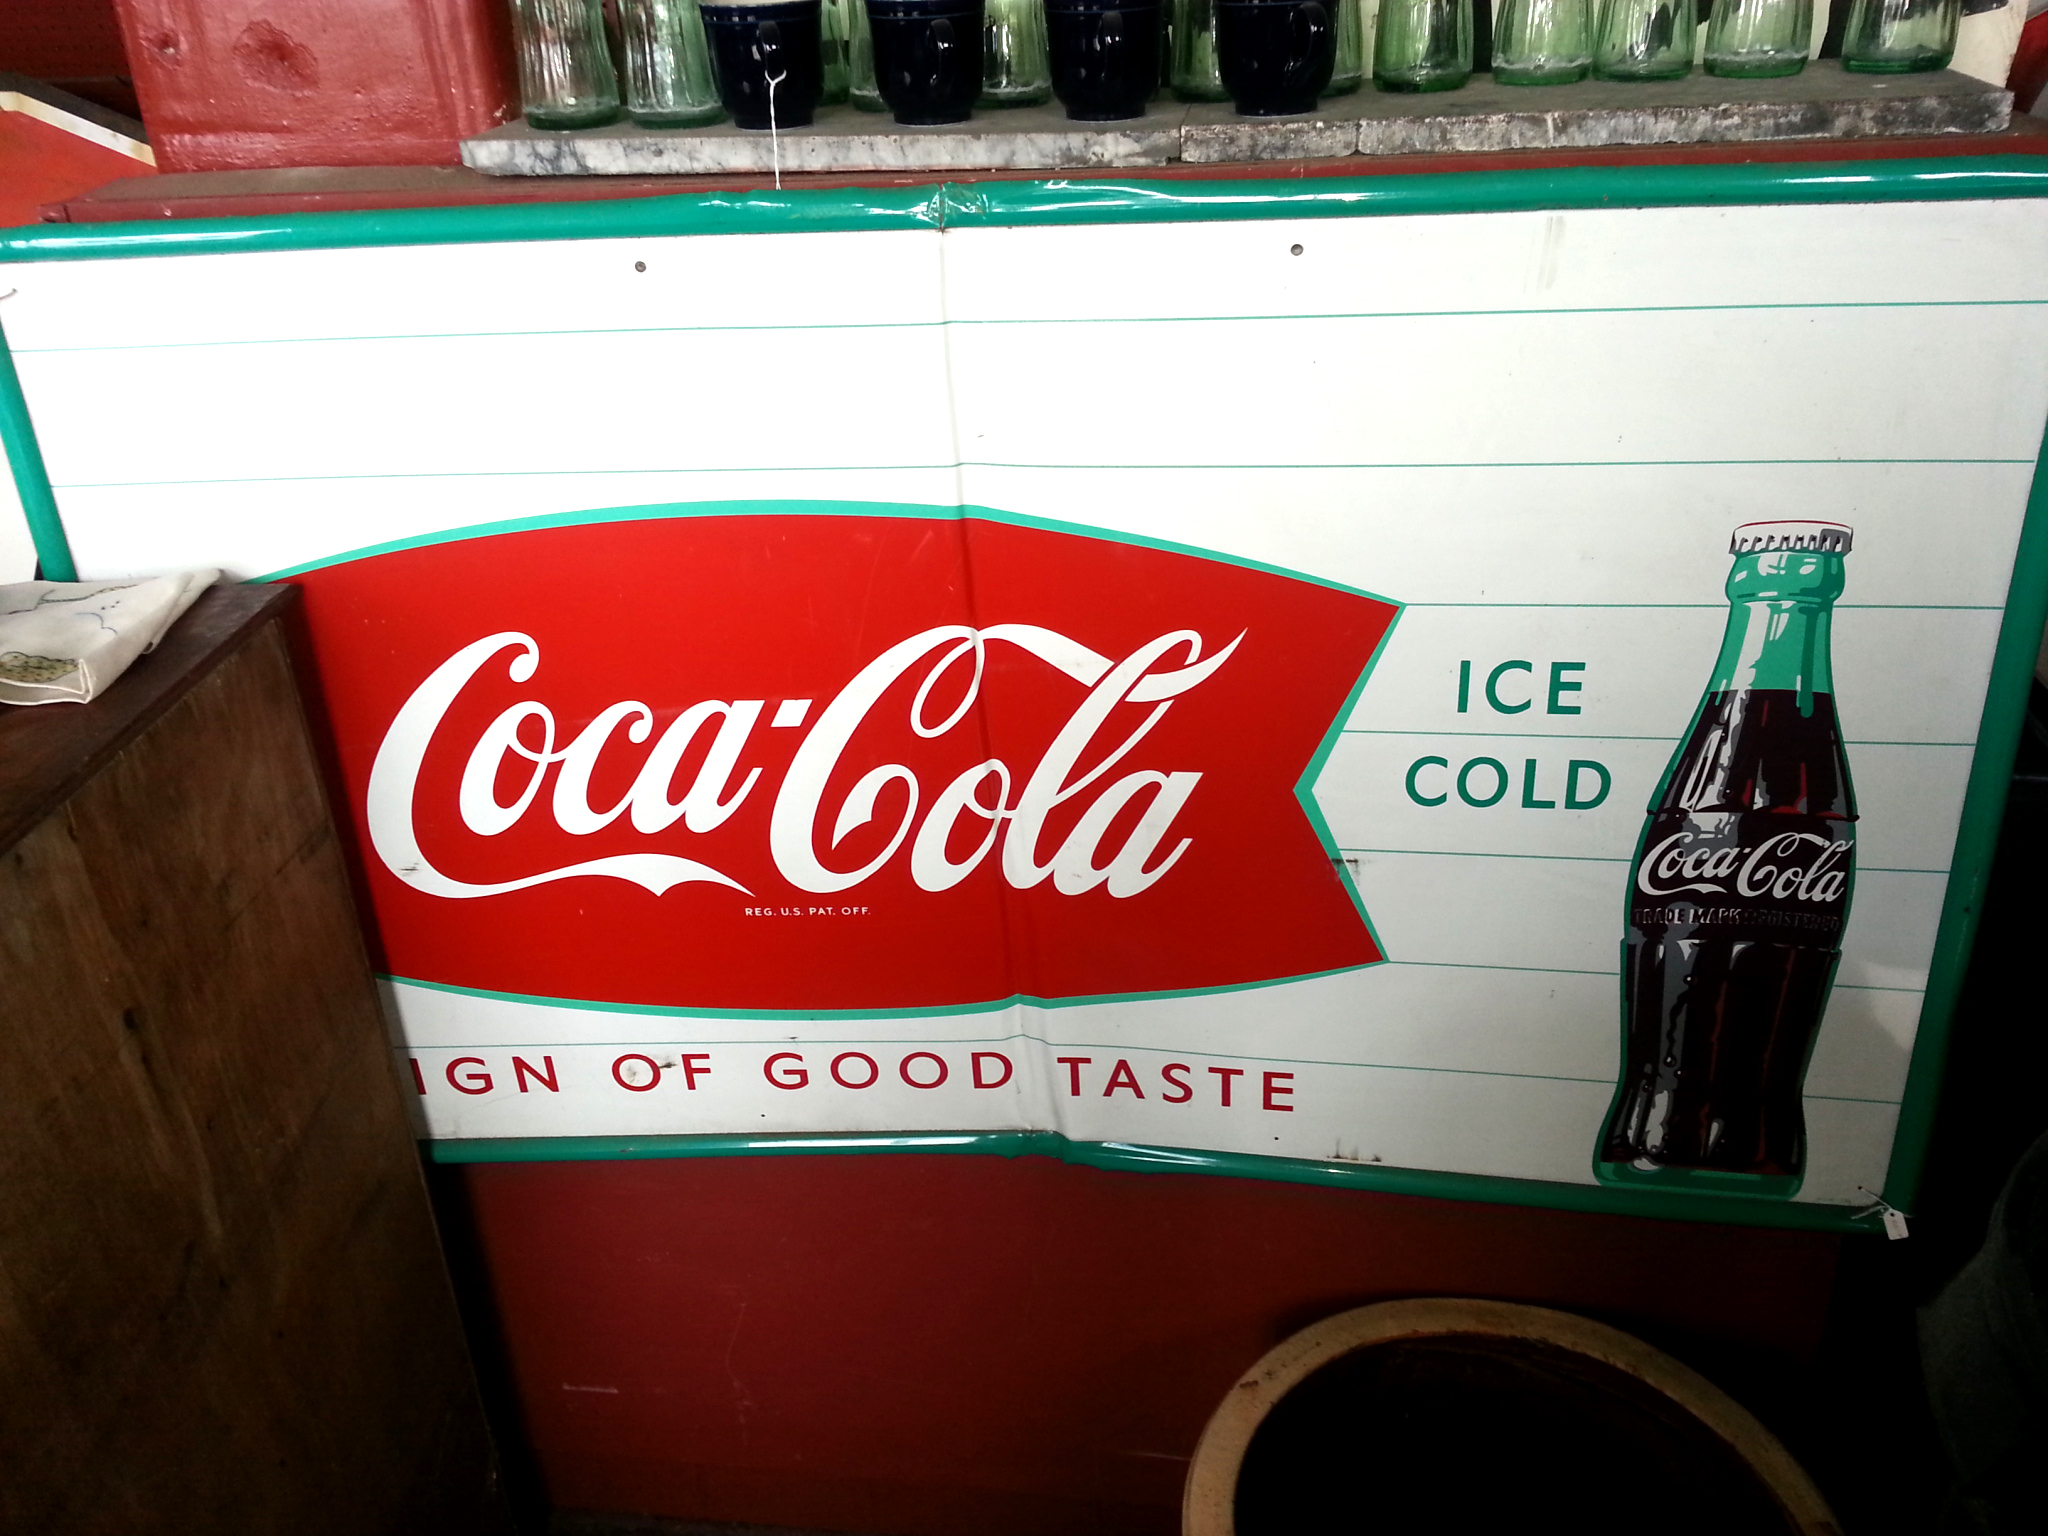 Coke-Cola Ice Cold - 31.5" x 55.5"